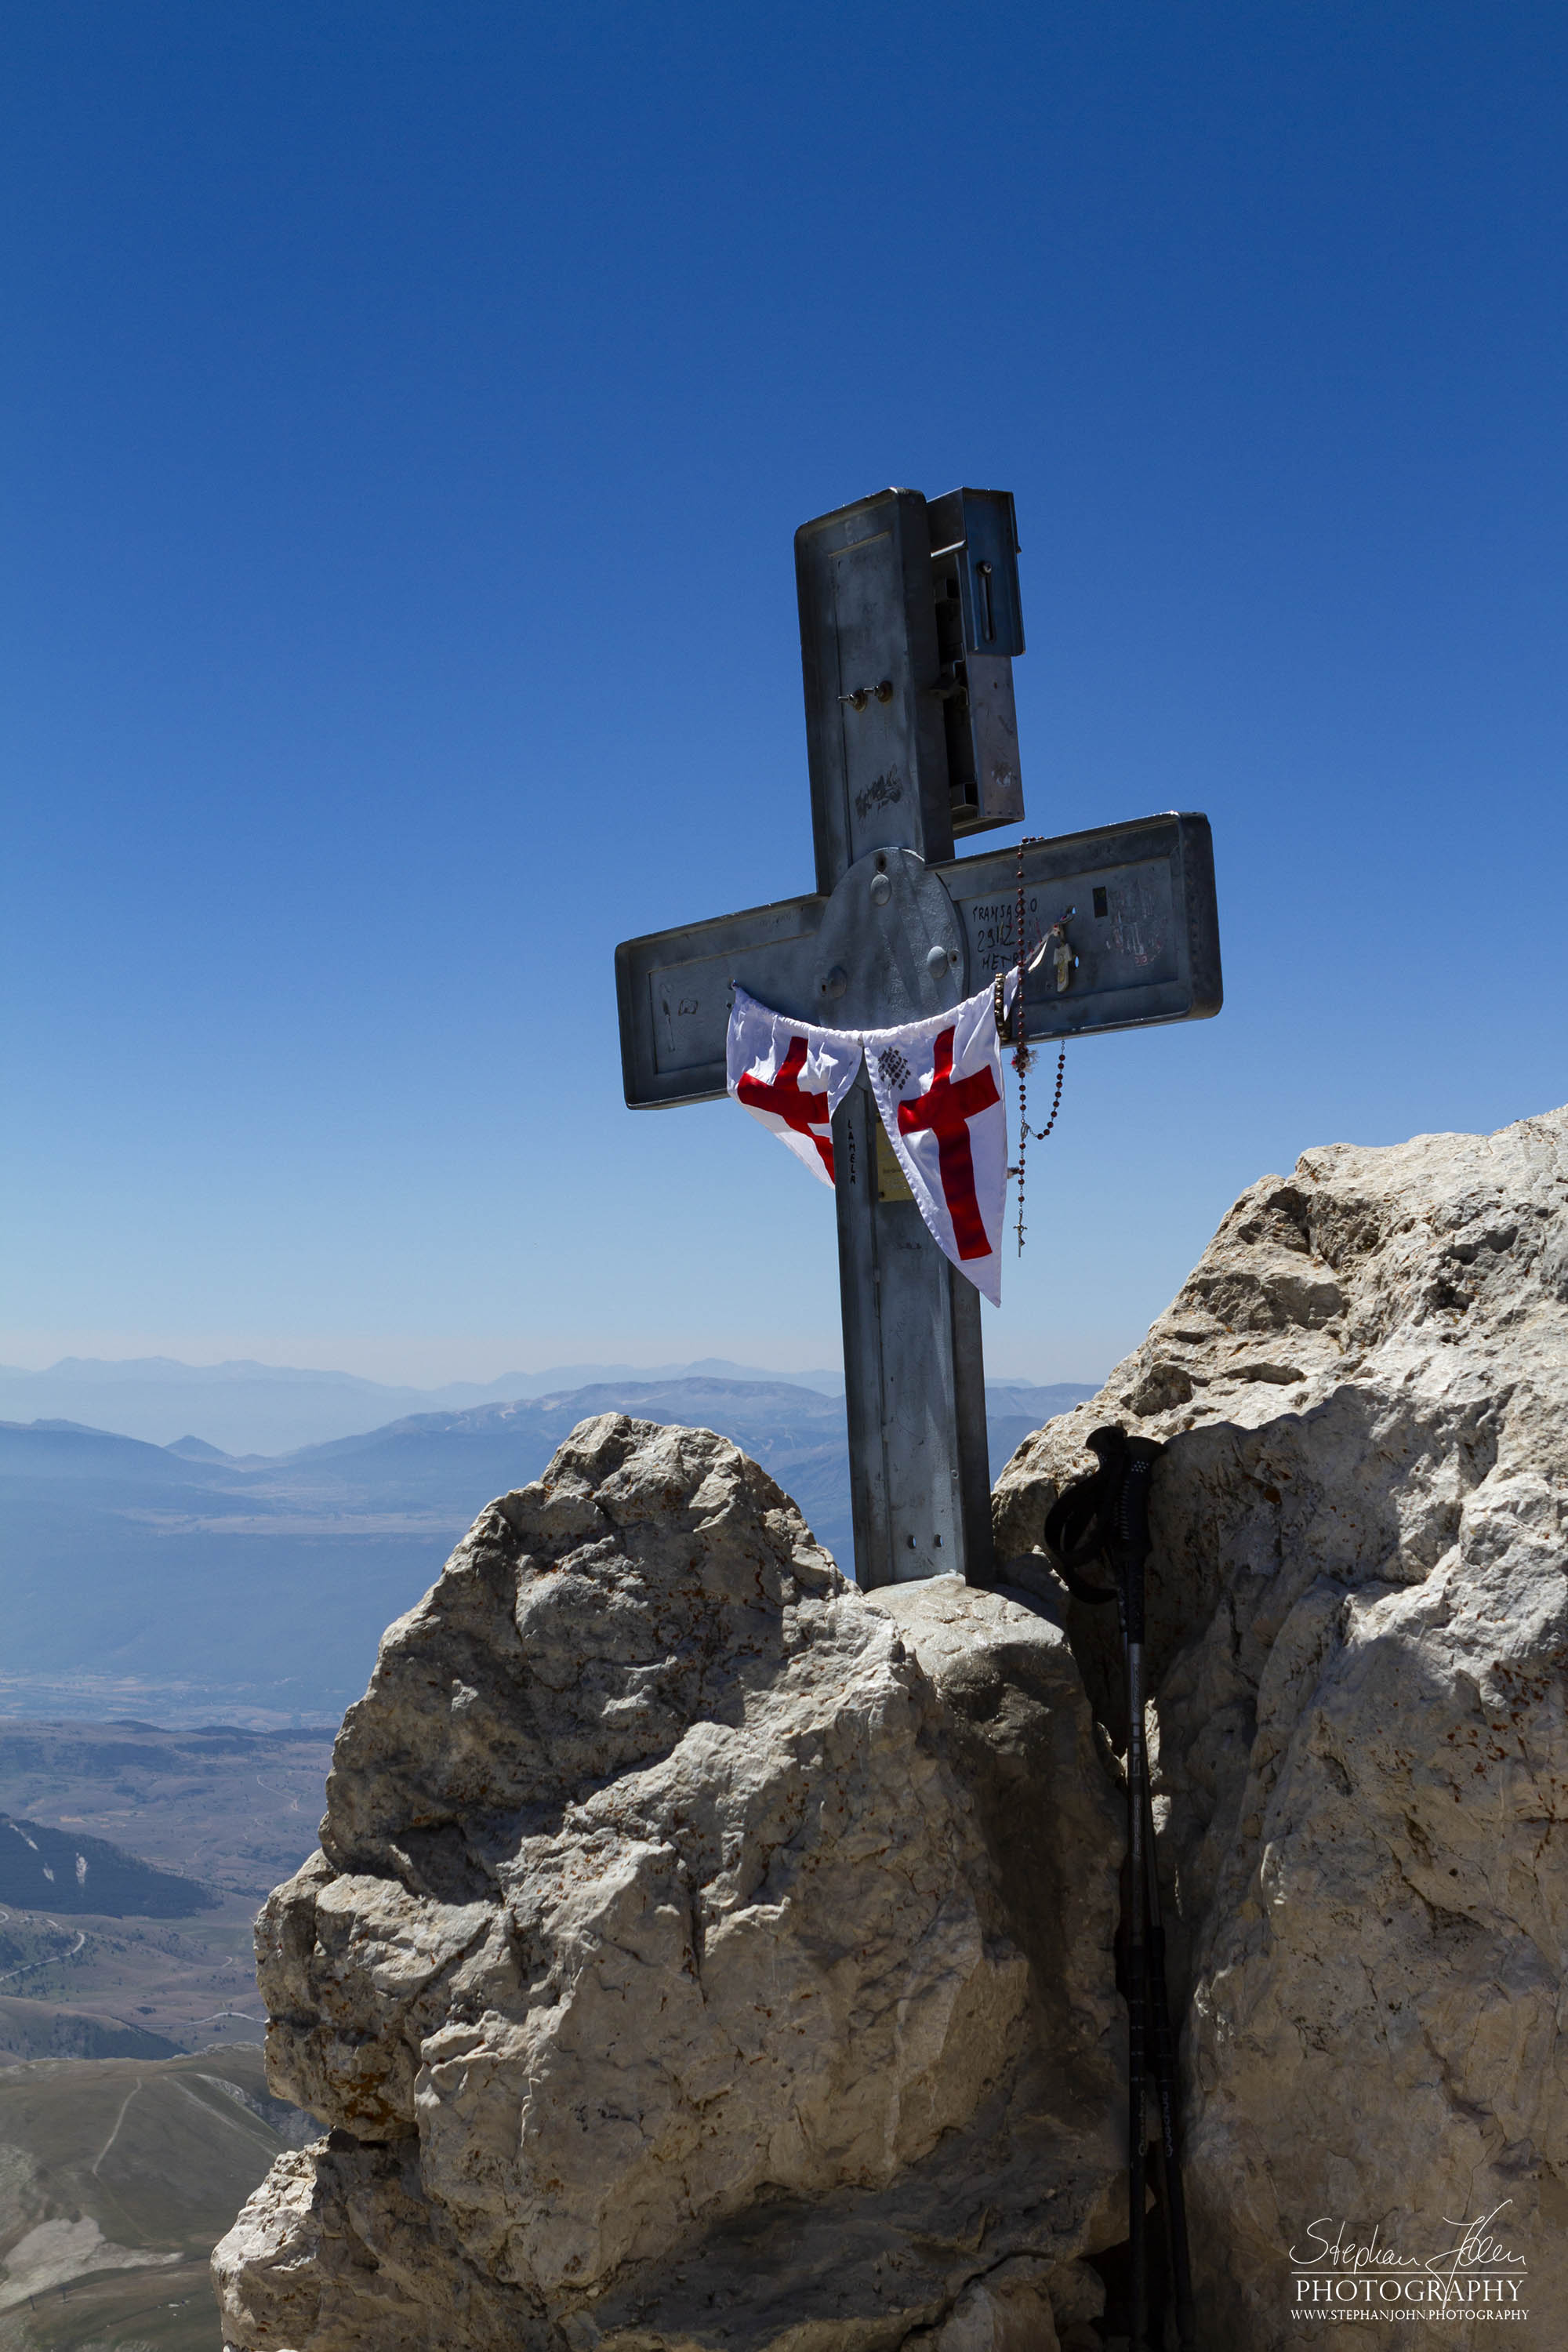 Gipfelkreuz auf dem Gran Sasso (2912 m) in den Abruzzen (Italien)